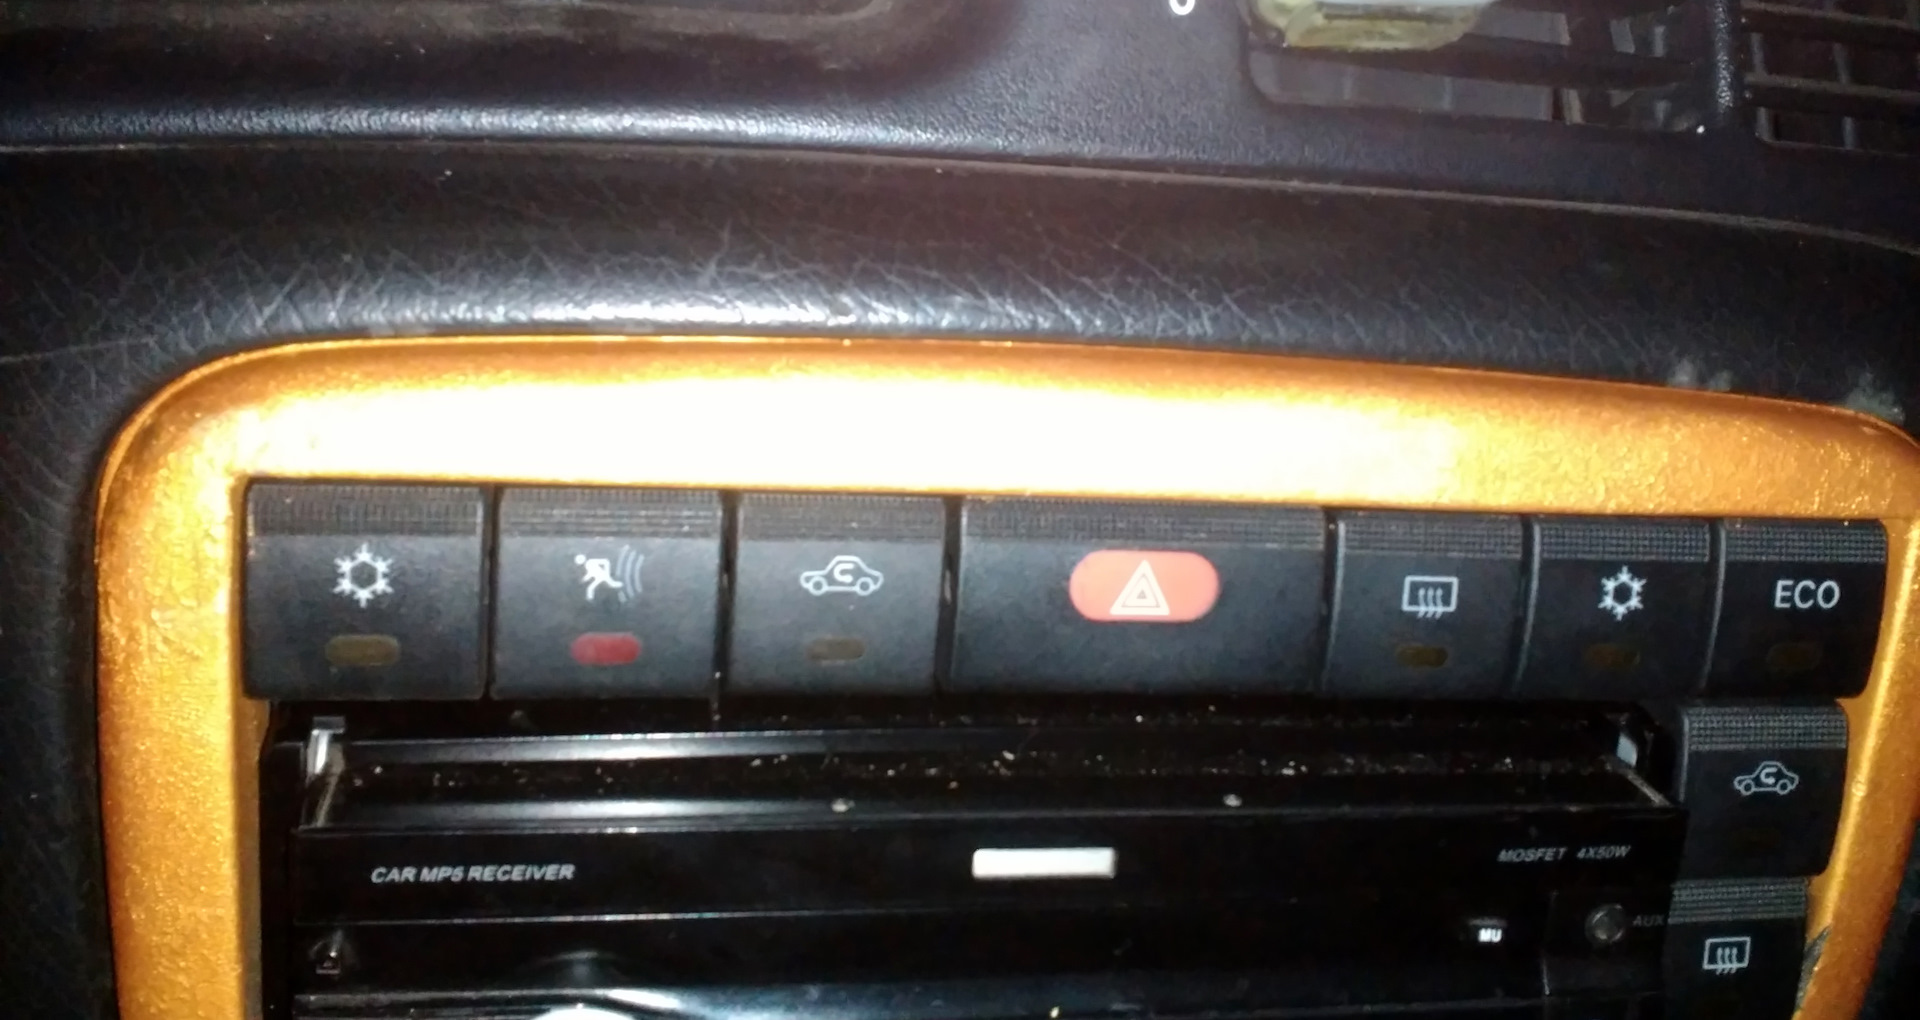 Кнопки вектра б. Кнопки Opel Omega b 98. Опель Омега б 1996 кнопки на консоли. Кнопка Opel Vectra b. Опель Омега б кнопки на панели.